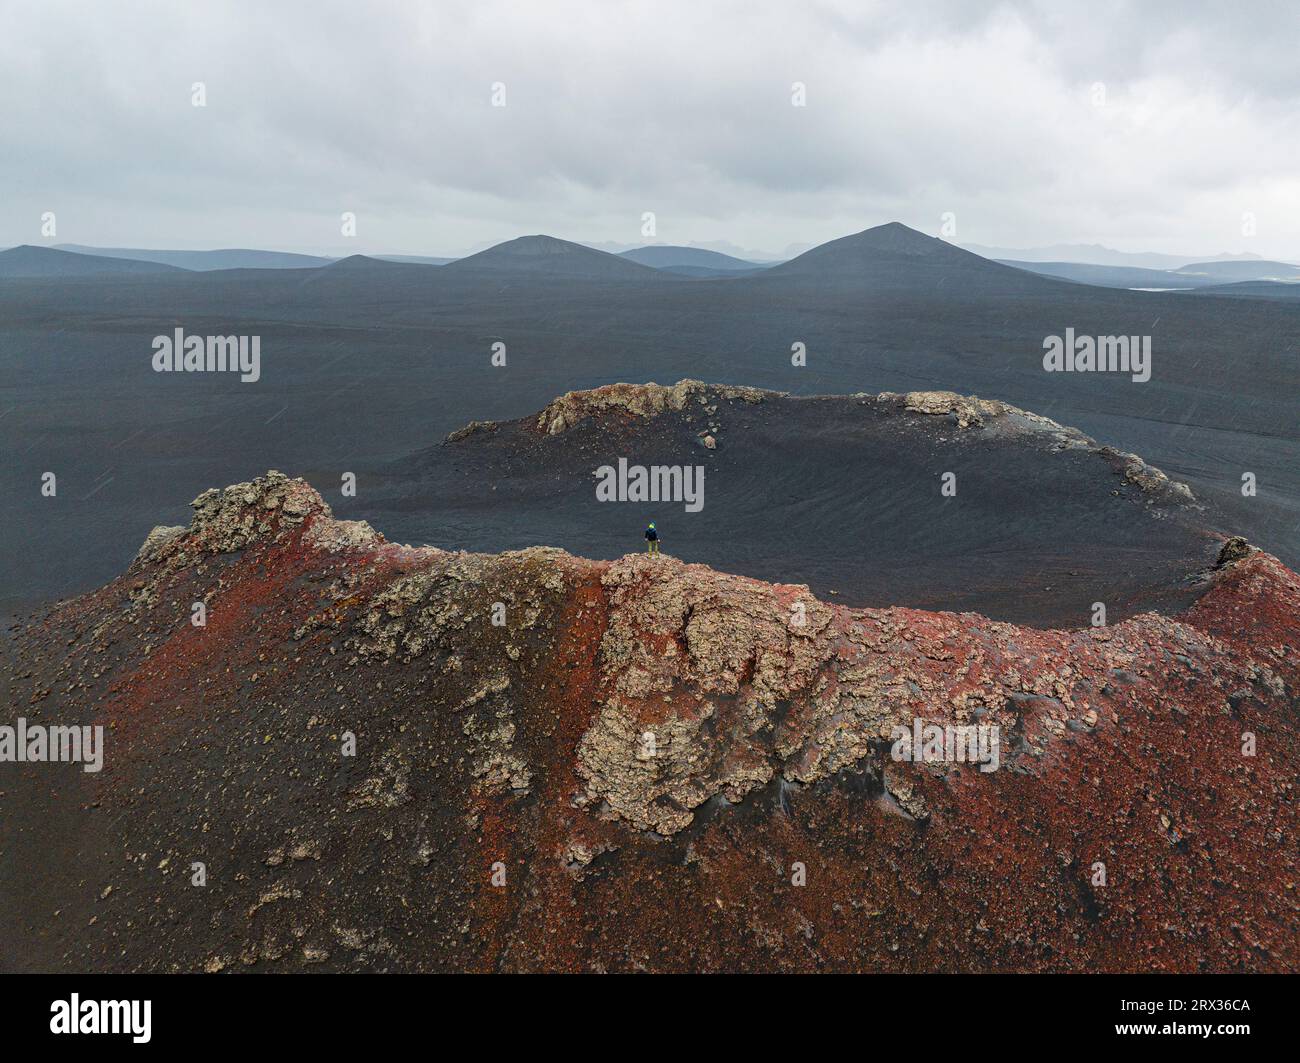 Una persona potrà ammirare il bellissimo paesaggio dalla foce del vecchio vulcano, delle Highlands, dell'Islanda e delle regioni polari Foto Stock